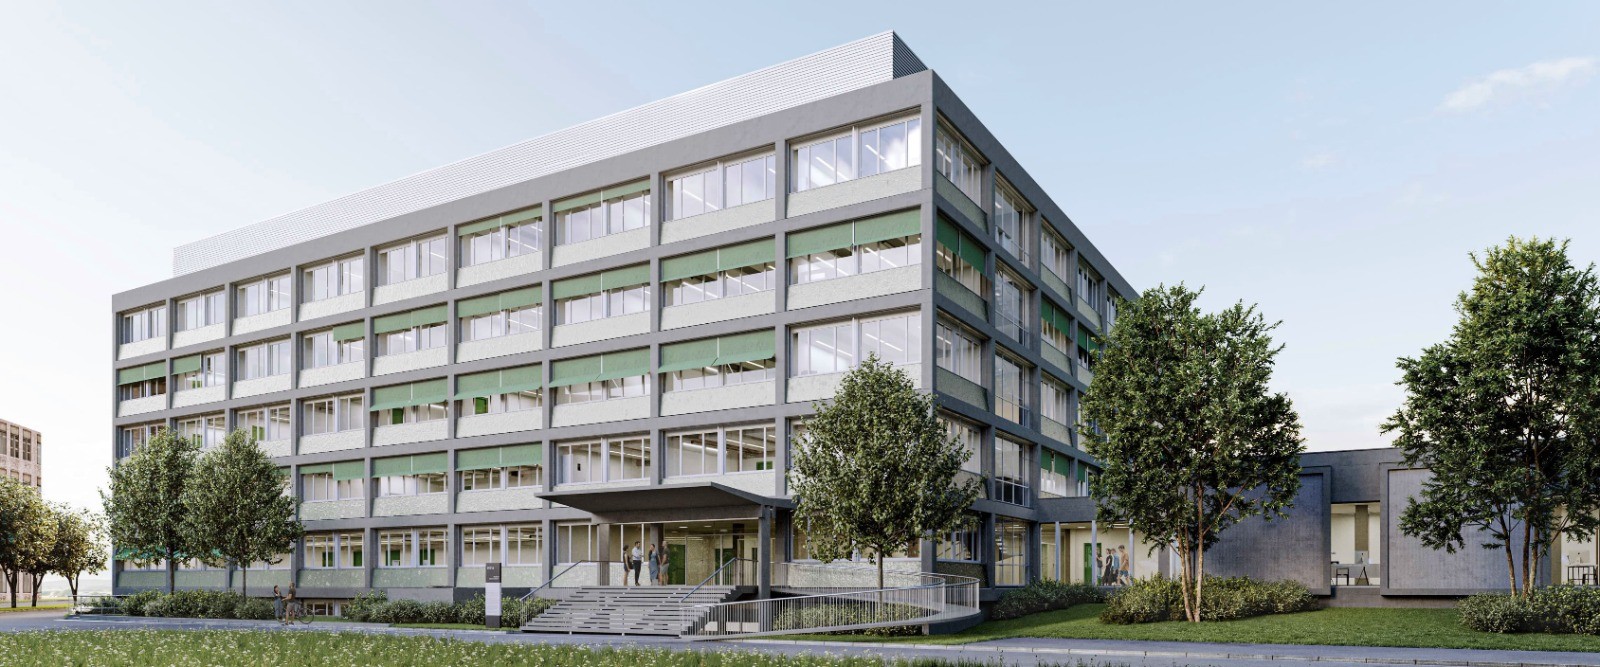 « La transformation » est le nom du projet lauréat du concours d'architecture en charge de la réfection totale du bâtiment de chimie PER10 de l'Université de Fribourg.